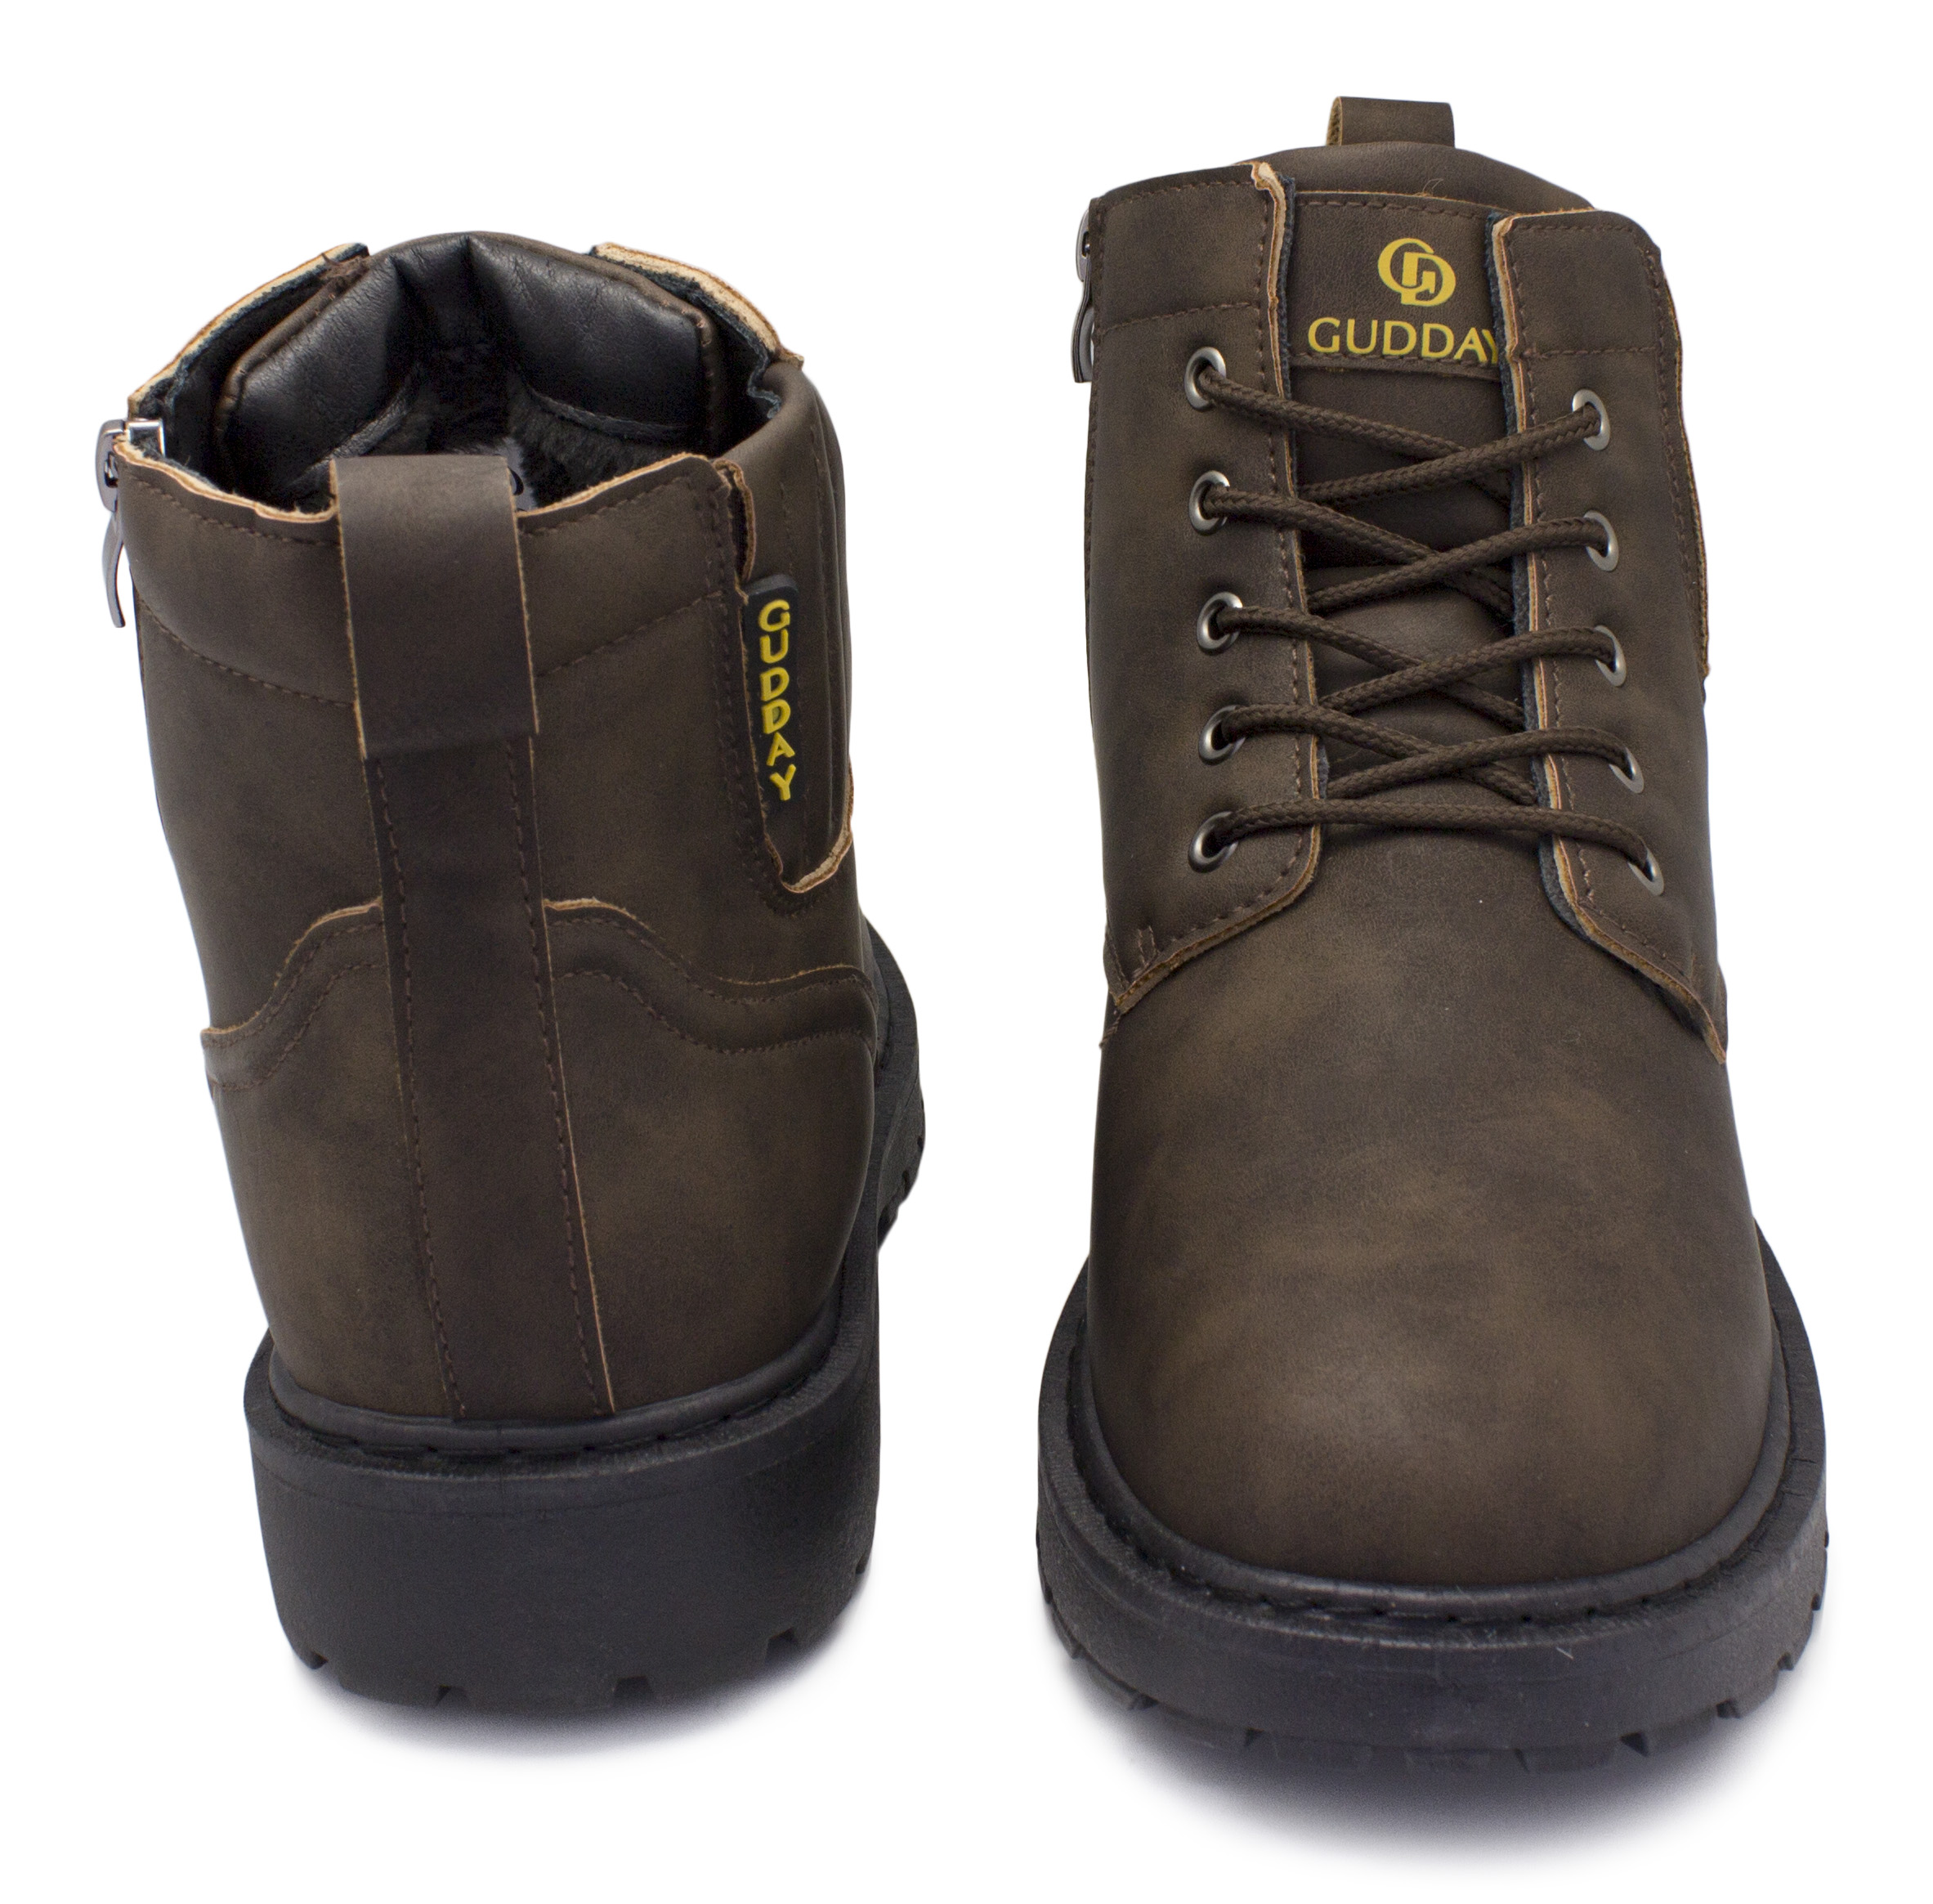 Gudday 12221-1 мужские зимние ортопедические ботинки коричневый — купить вМоскве в интернет-магазине ОРТОЛАЙН